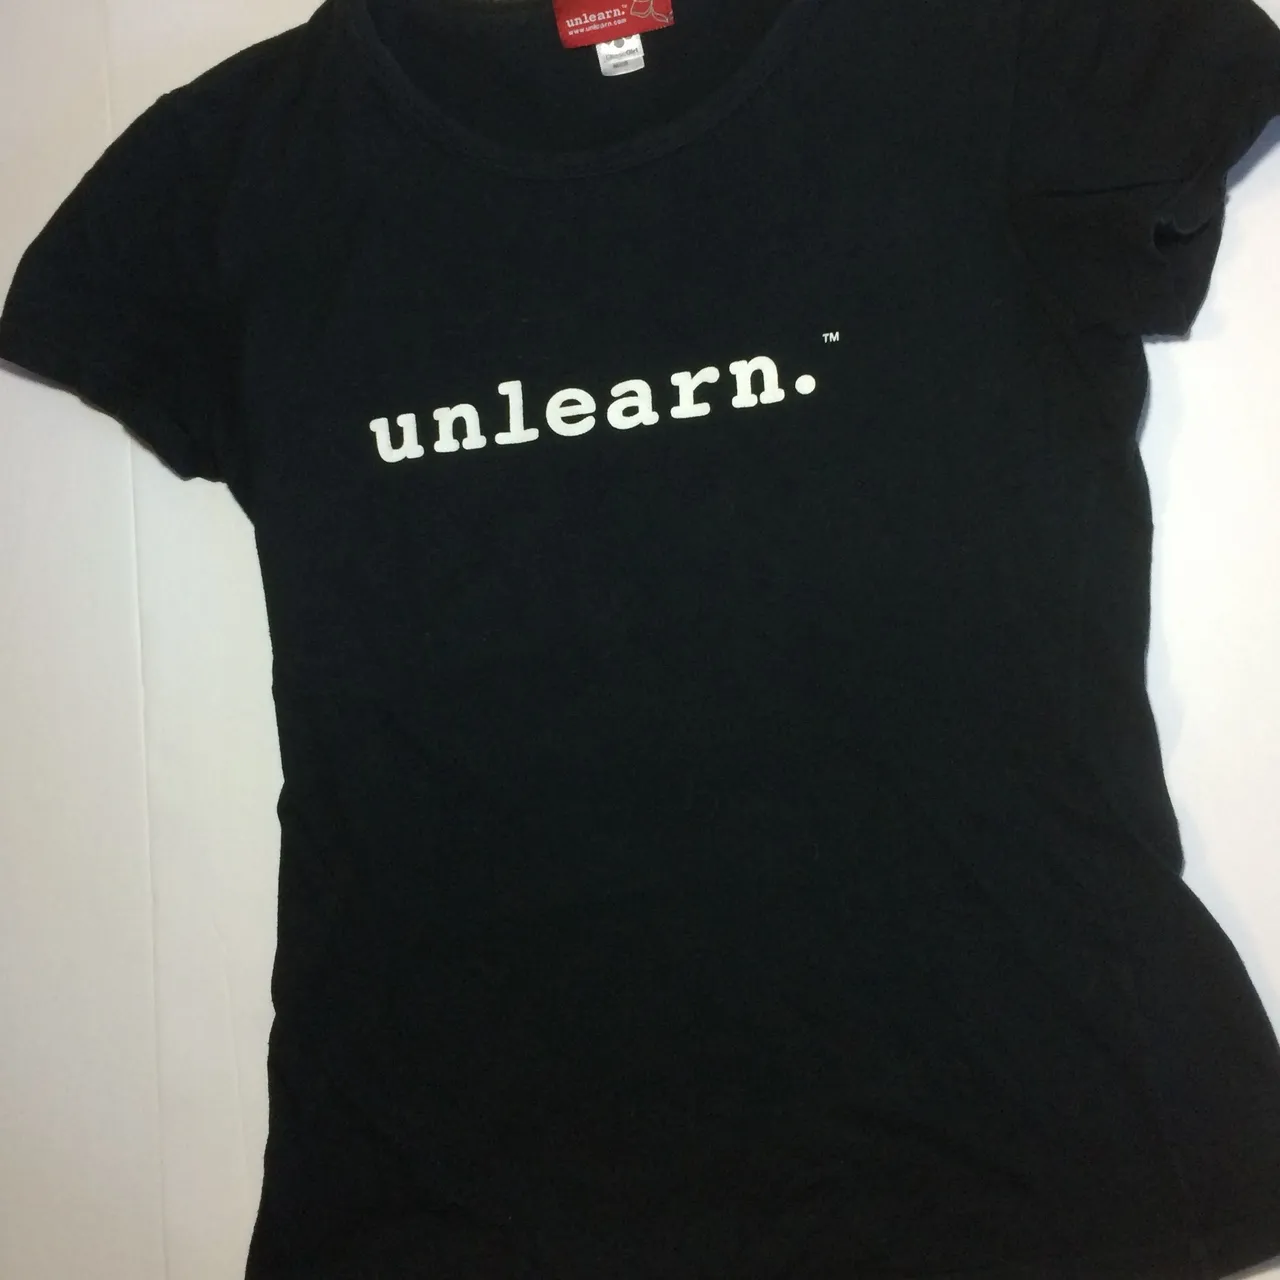 Unlearn T-shirt photo 1